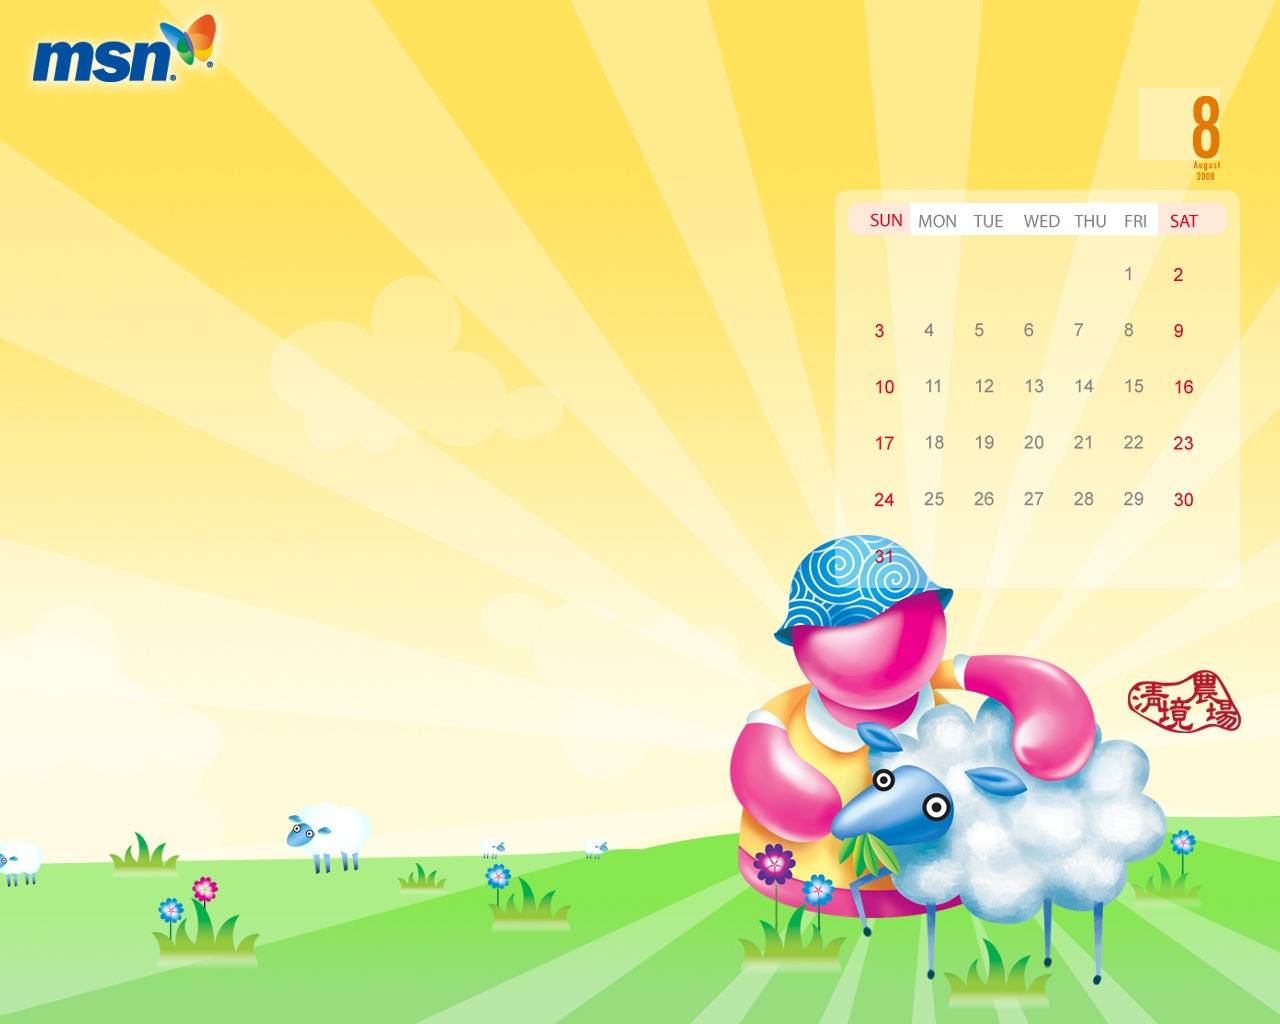 Windows Live Messenger Calendar - Msn - HD Wallpaper 